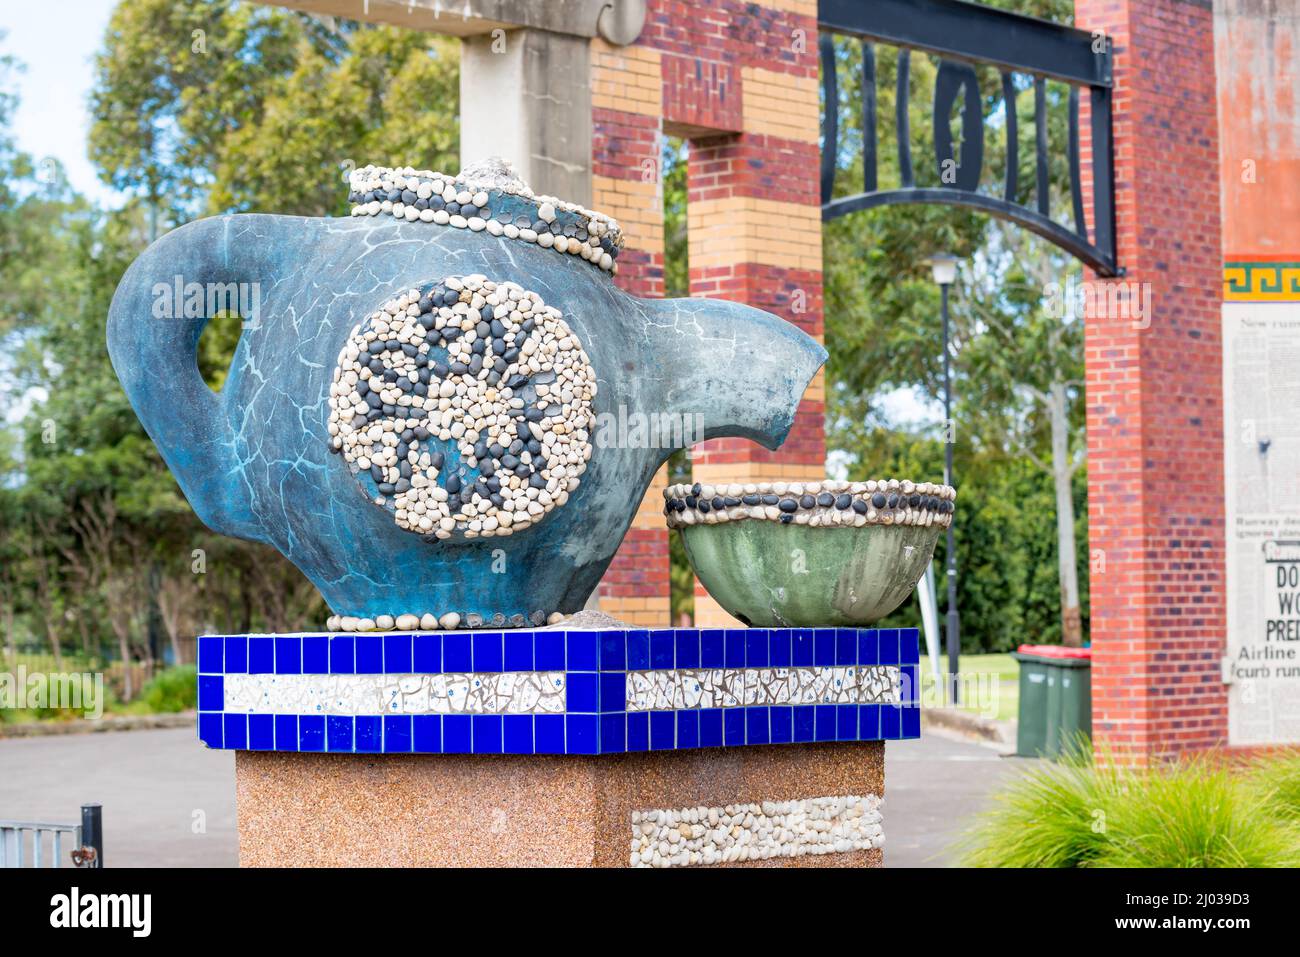 Le Big Teapot de Sydenham Green, Sydney, Australie, fait partie d'un mémorial aux maisons perdues et changées suite aux extensions de piste à l'aéroport de Sydney Banque D'Images